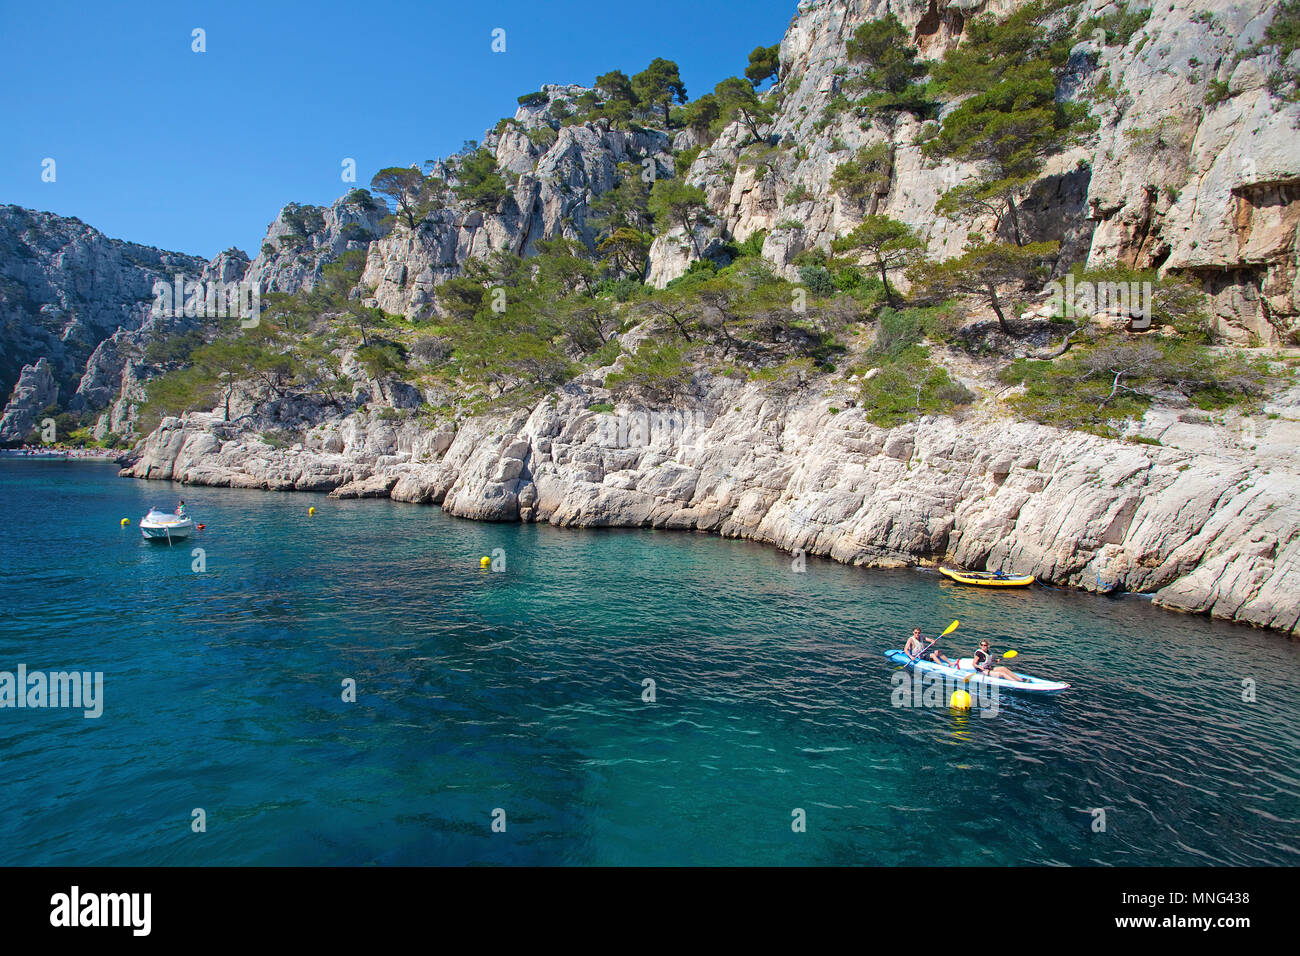 La kayakiste à Calanque de Port Miou, fjord naturel utilisé comme Marina, Calanques, Bouches-du-Rhône, de la Côte d'Azur, France Sud, France, Europe Banque D'Images